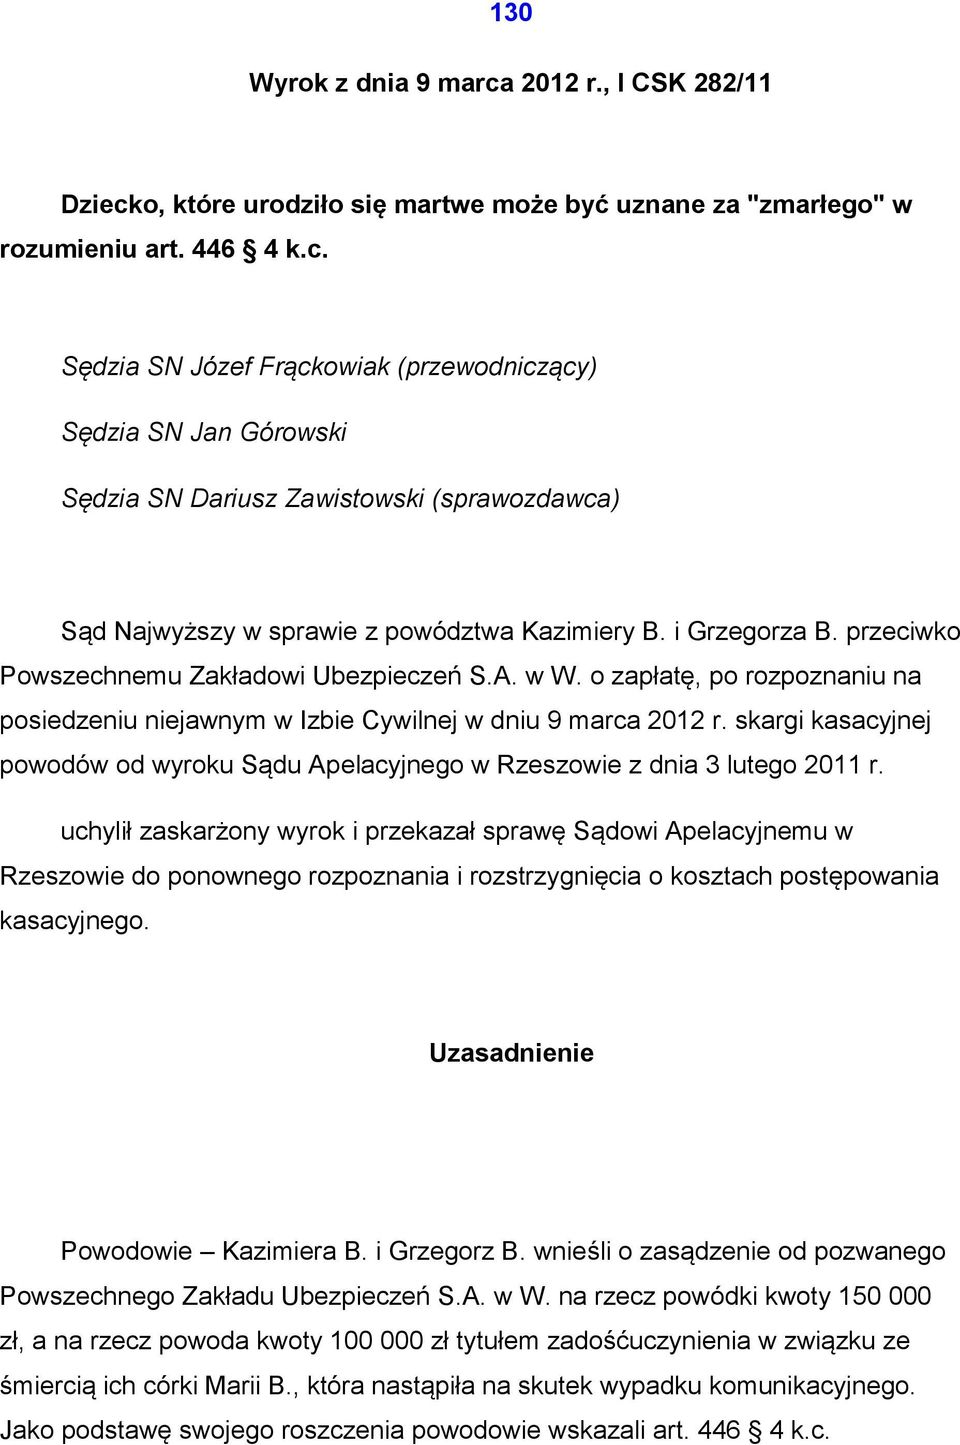 skargi kasacyjnej powodów od wyroku Sądu Apelacyjnego w Rzeszowie z dnia 3 lutego 2011 r.